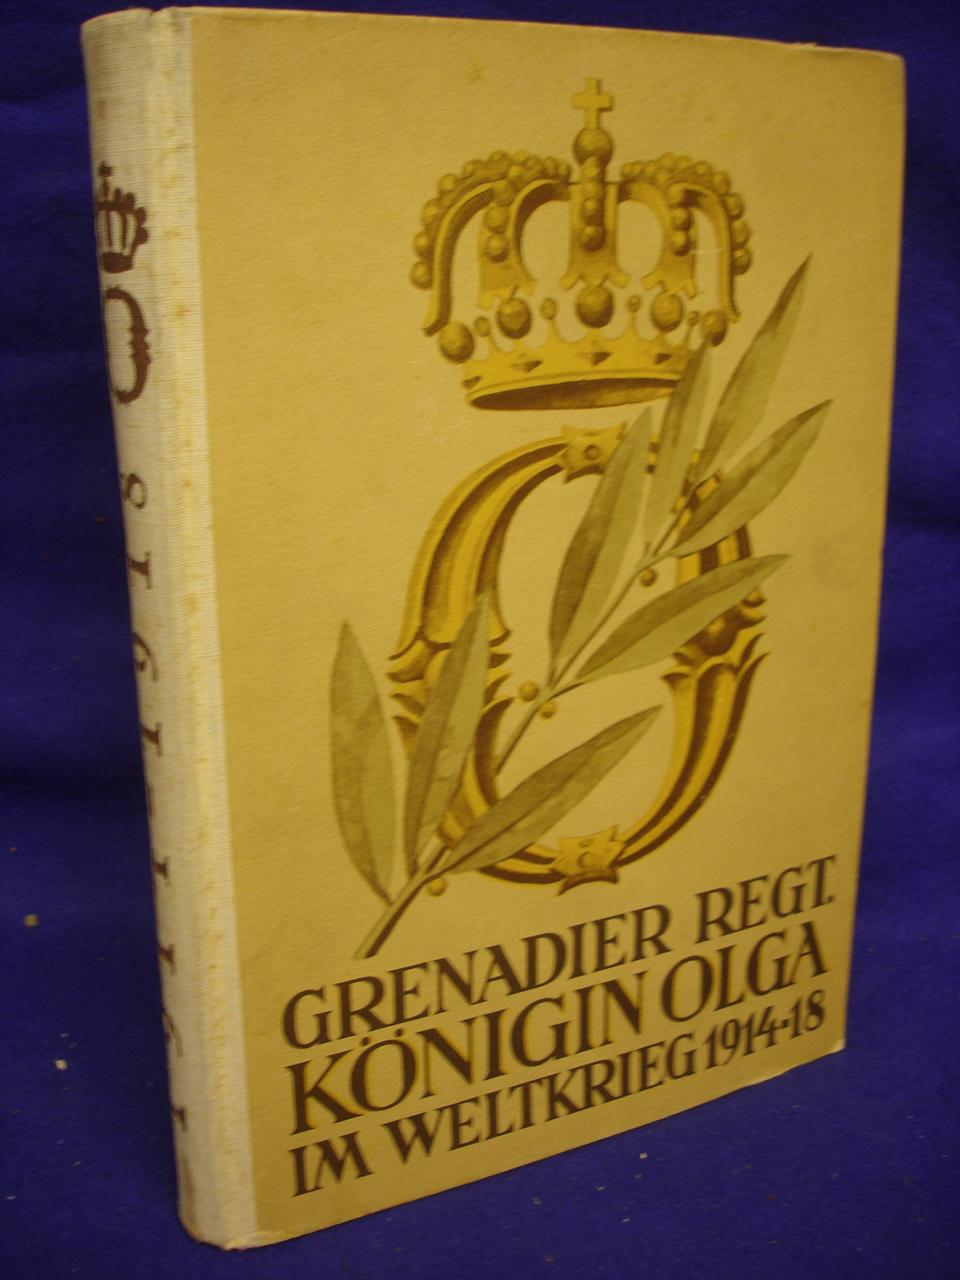 Das Grenadier-Regiment Königin Olga (1. Württ.) Nr. 119 im Weltkrieg 1914-1918. 